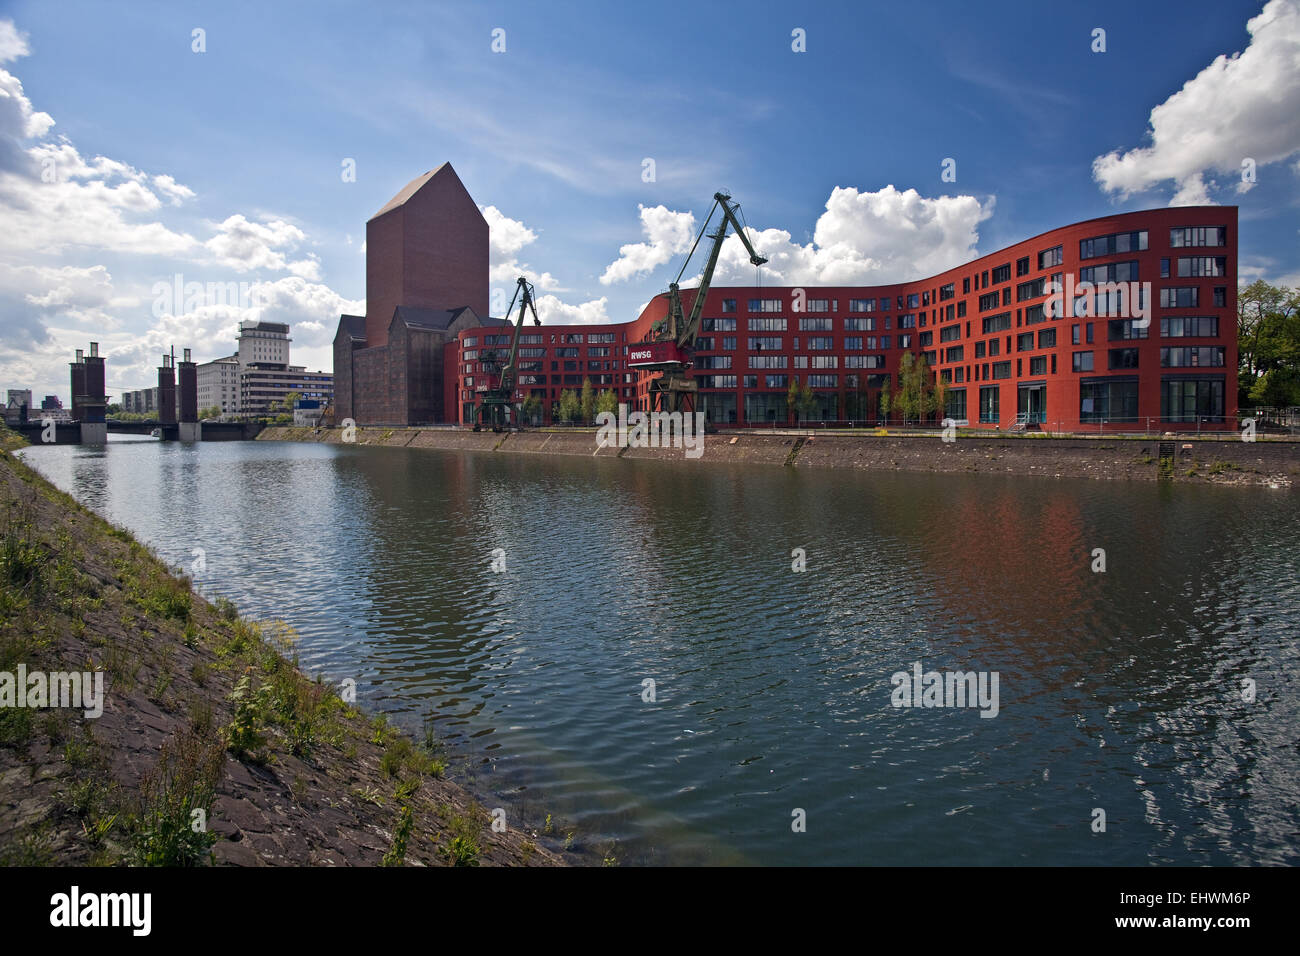 NRW-Archive, Duisburg inneren Hafen, Deutschland. Stockfoto